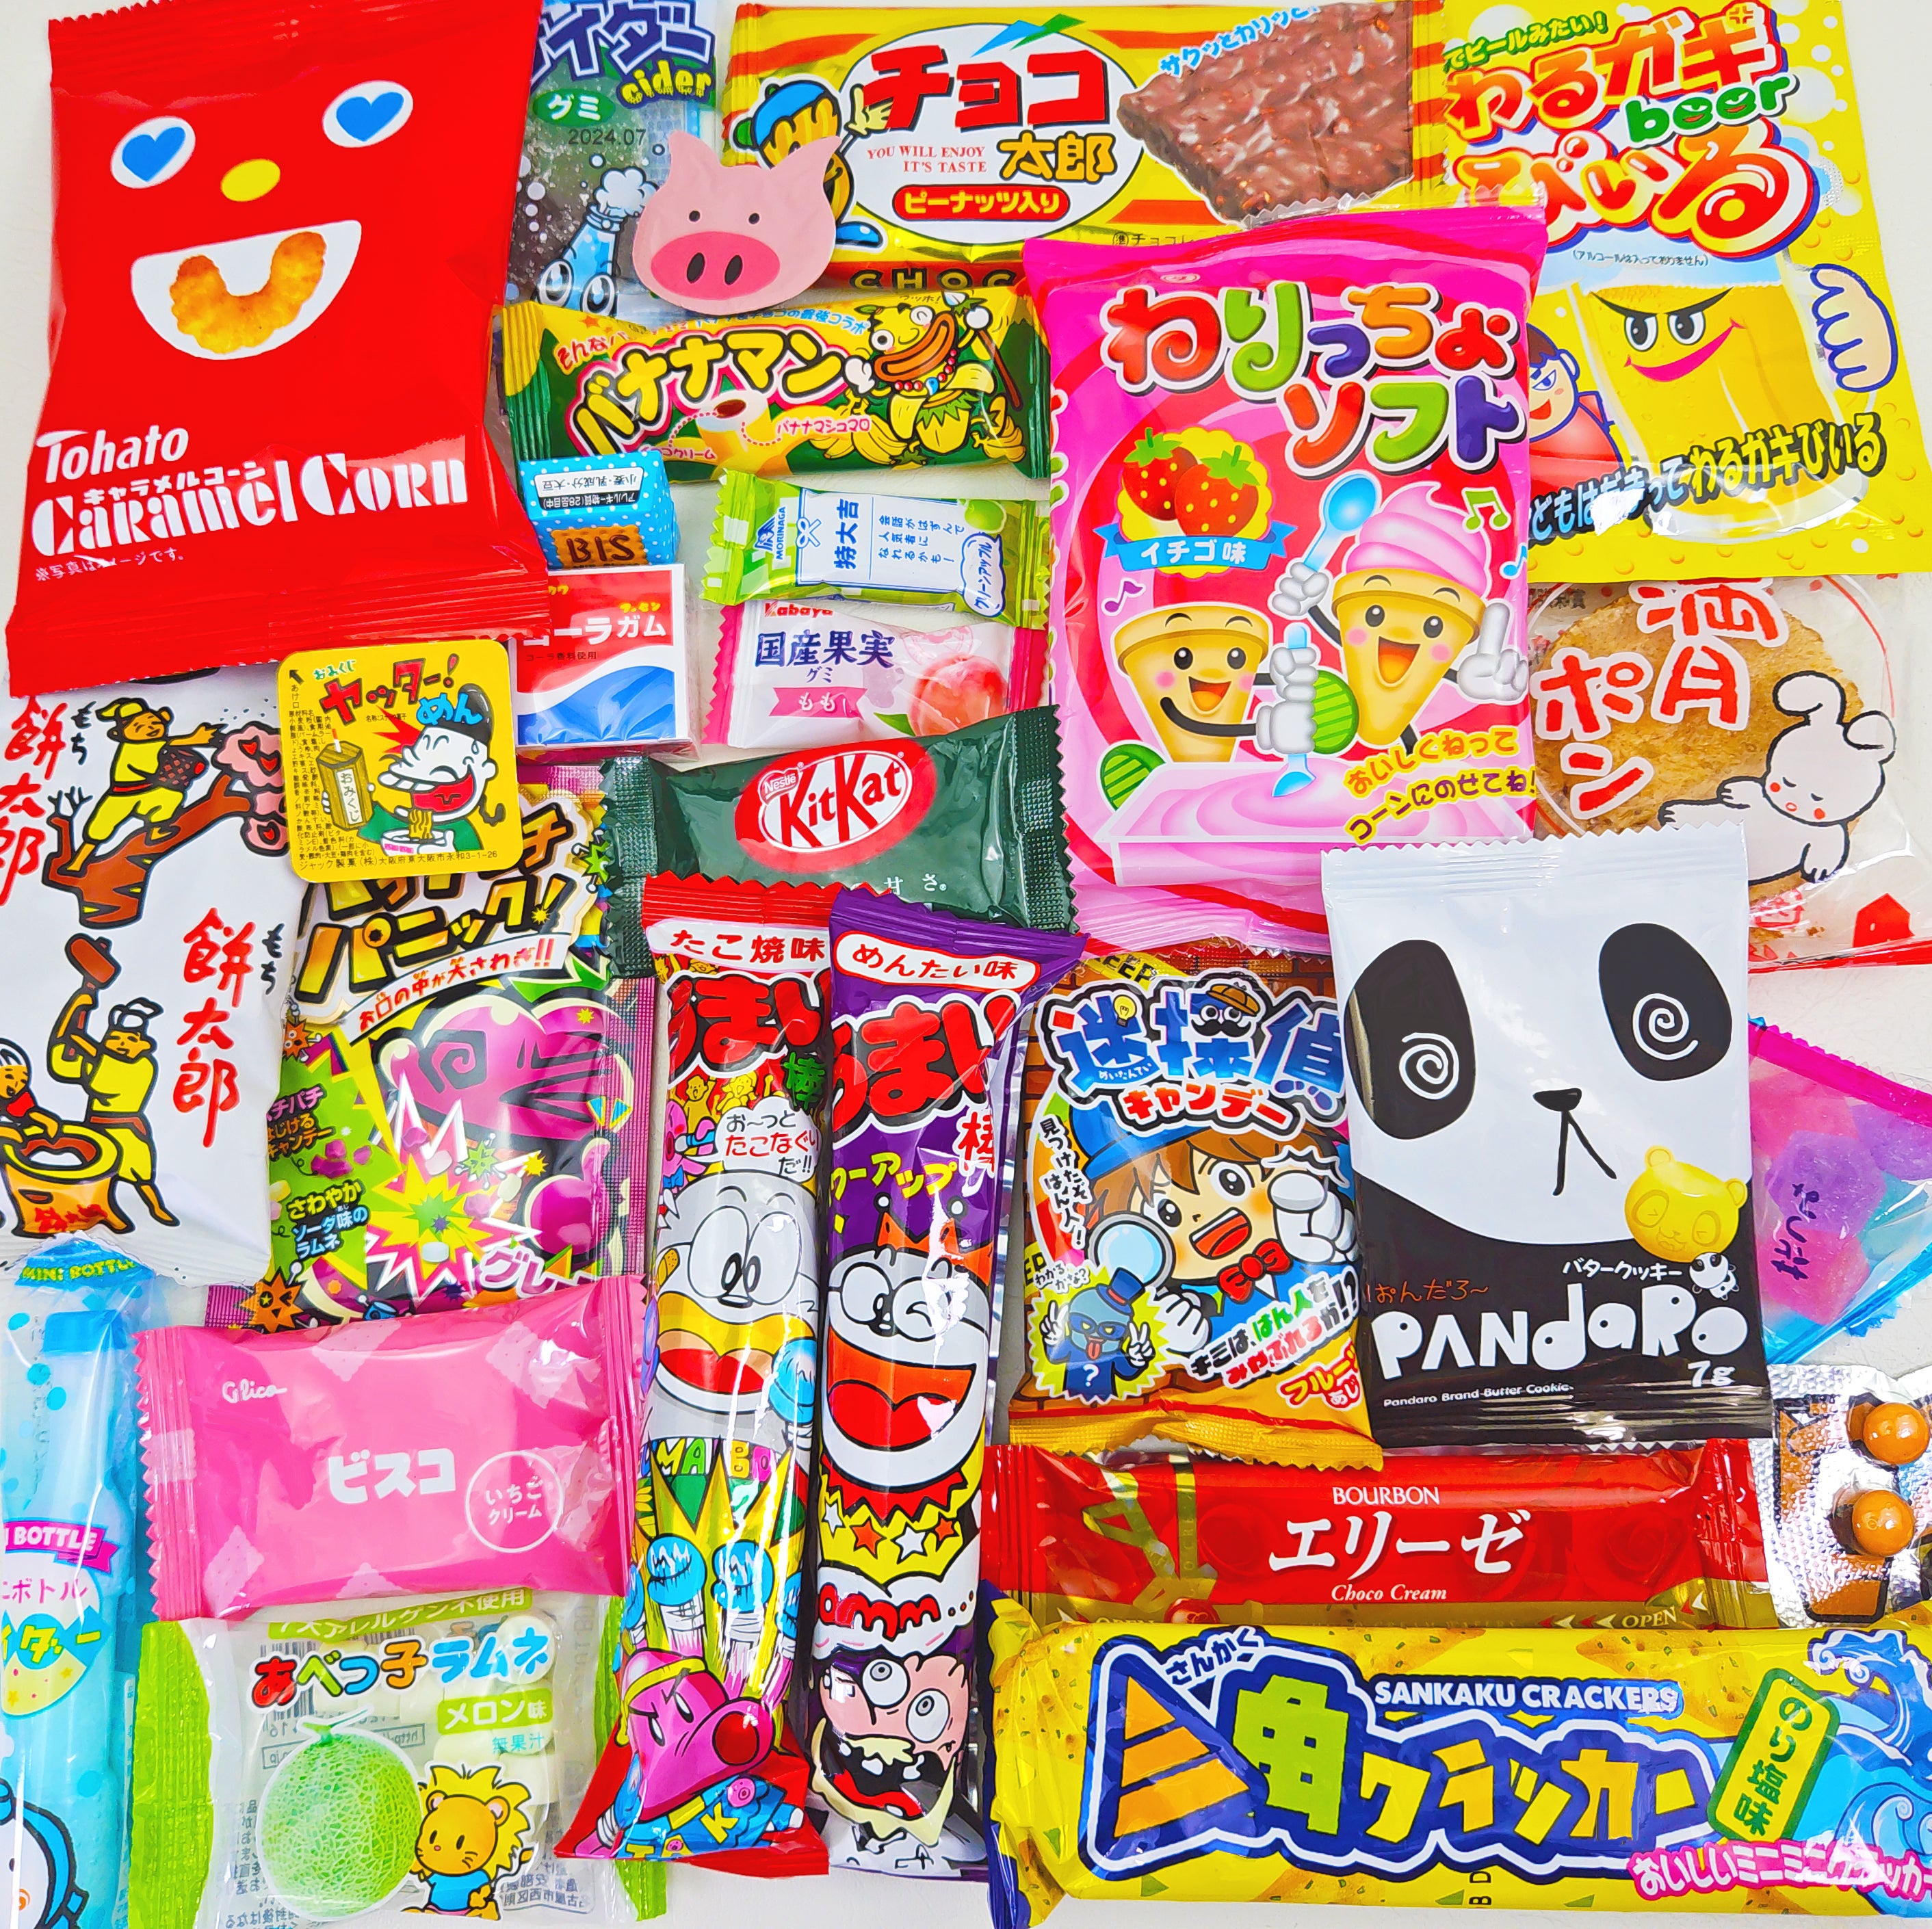 30-Piece Dagashi Japanese Snack & Candy Box | Sakura Box